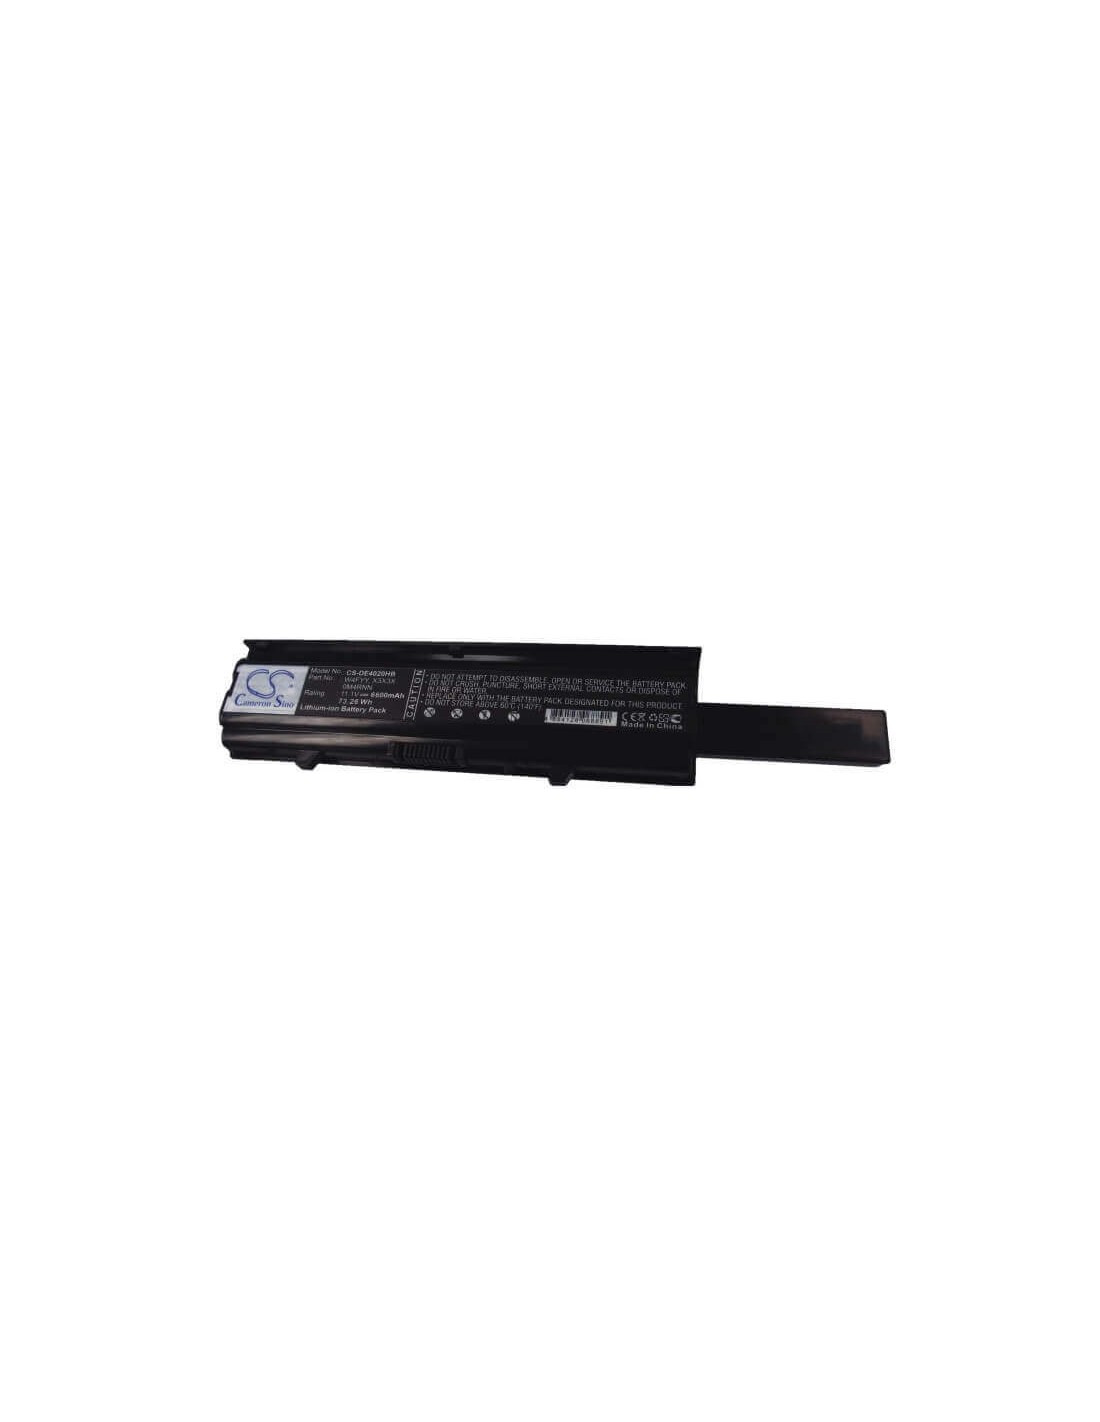 Black Battery for Dell Inspiron 14v, Inspiron 14r-346, Inspiron 14vr 11.1V, 6600mAh - 73.26Wh